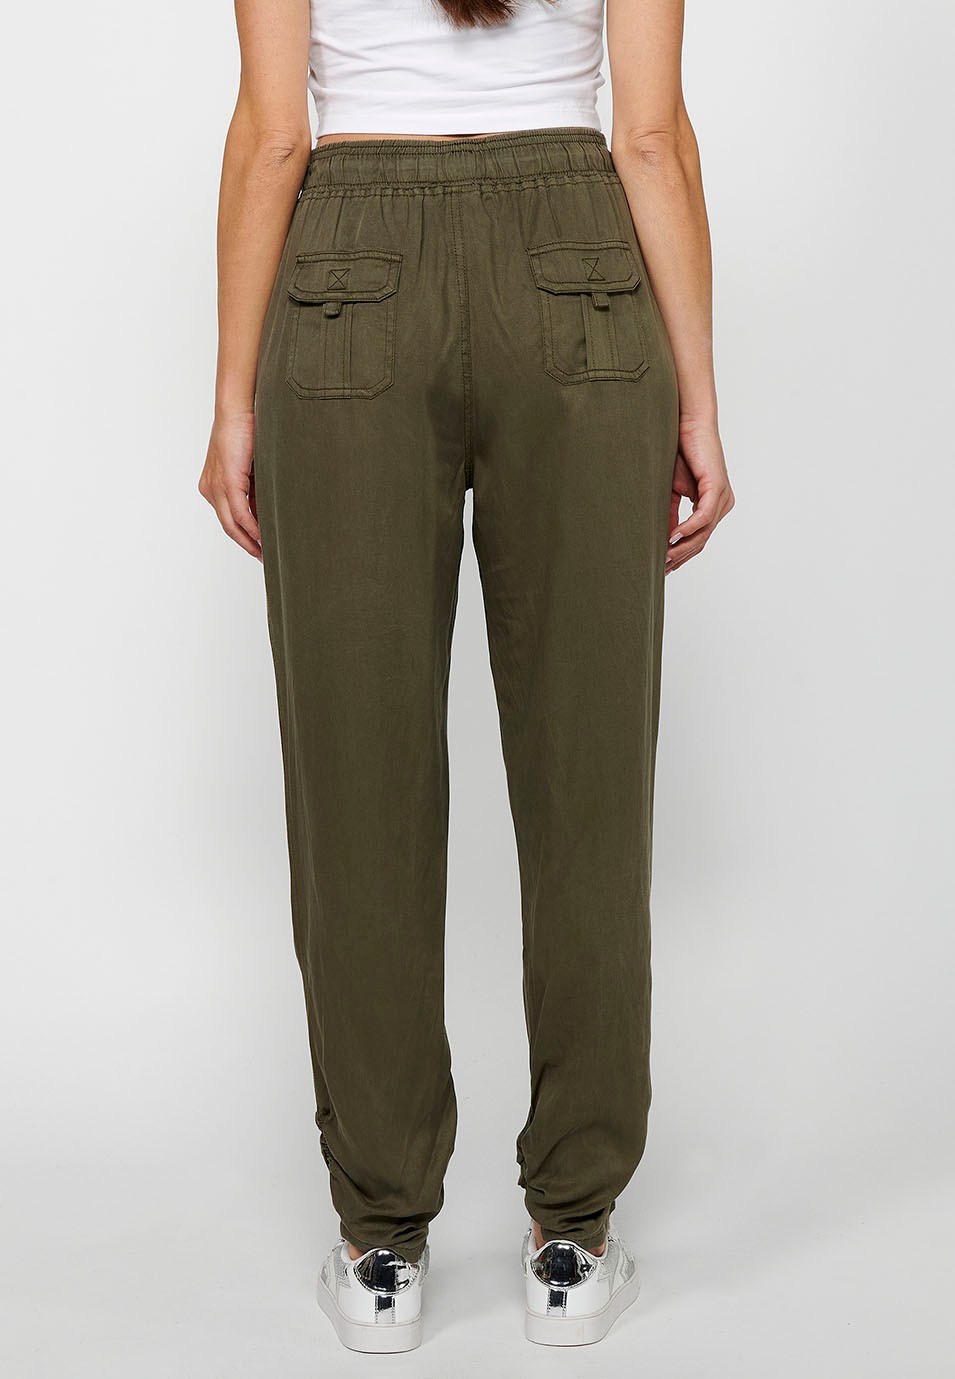 Pantalon de jogging long avec finition bouclée et taille caoutchoutée avec quatre poches, deux poches arrière à rabat de couleur Kaki pour femme 4